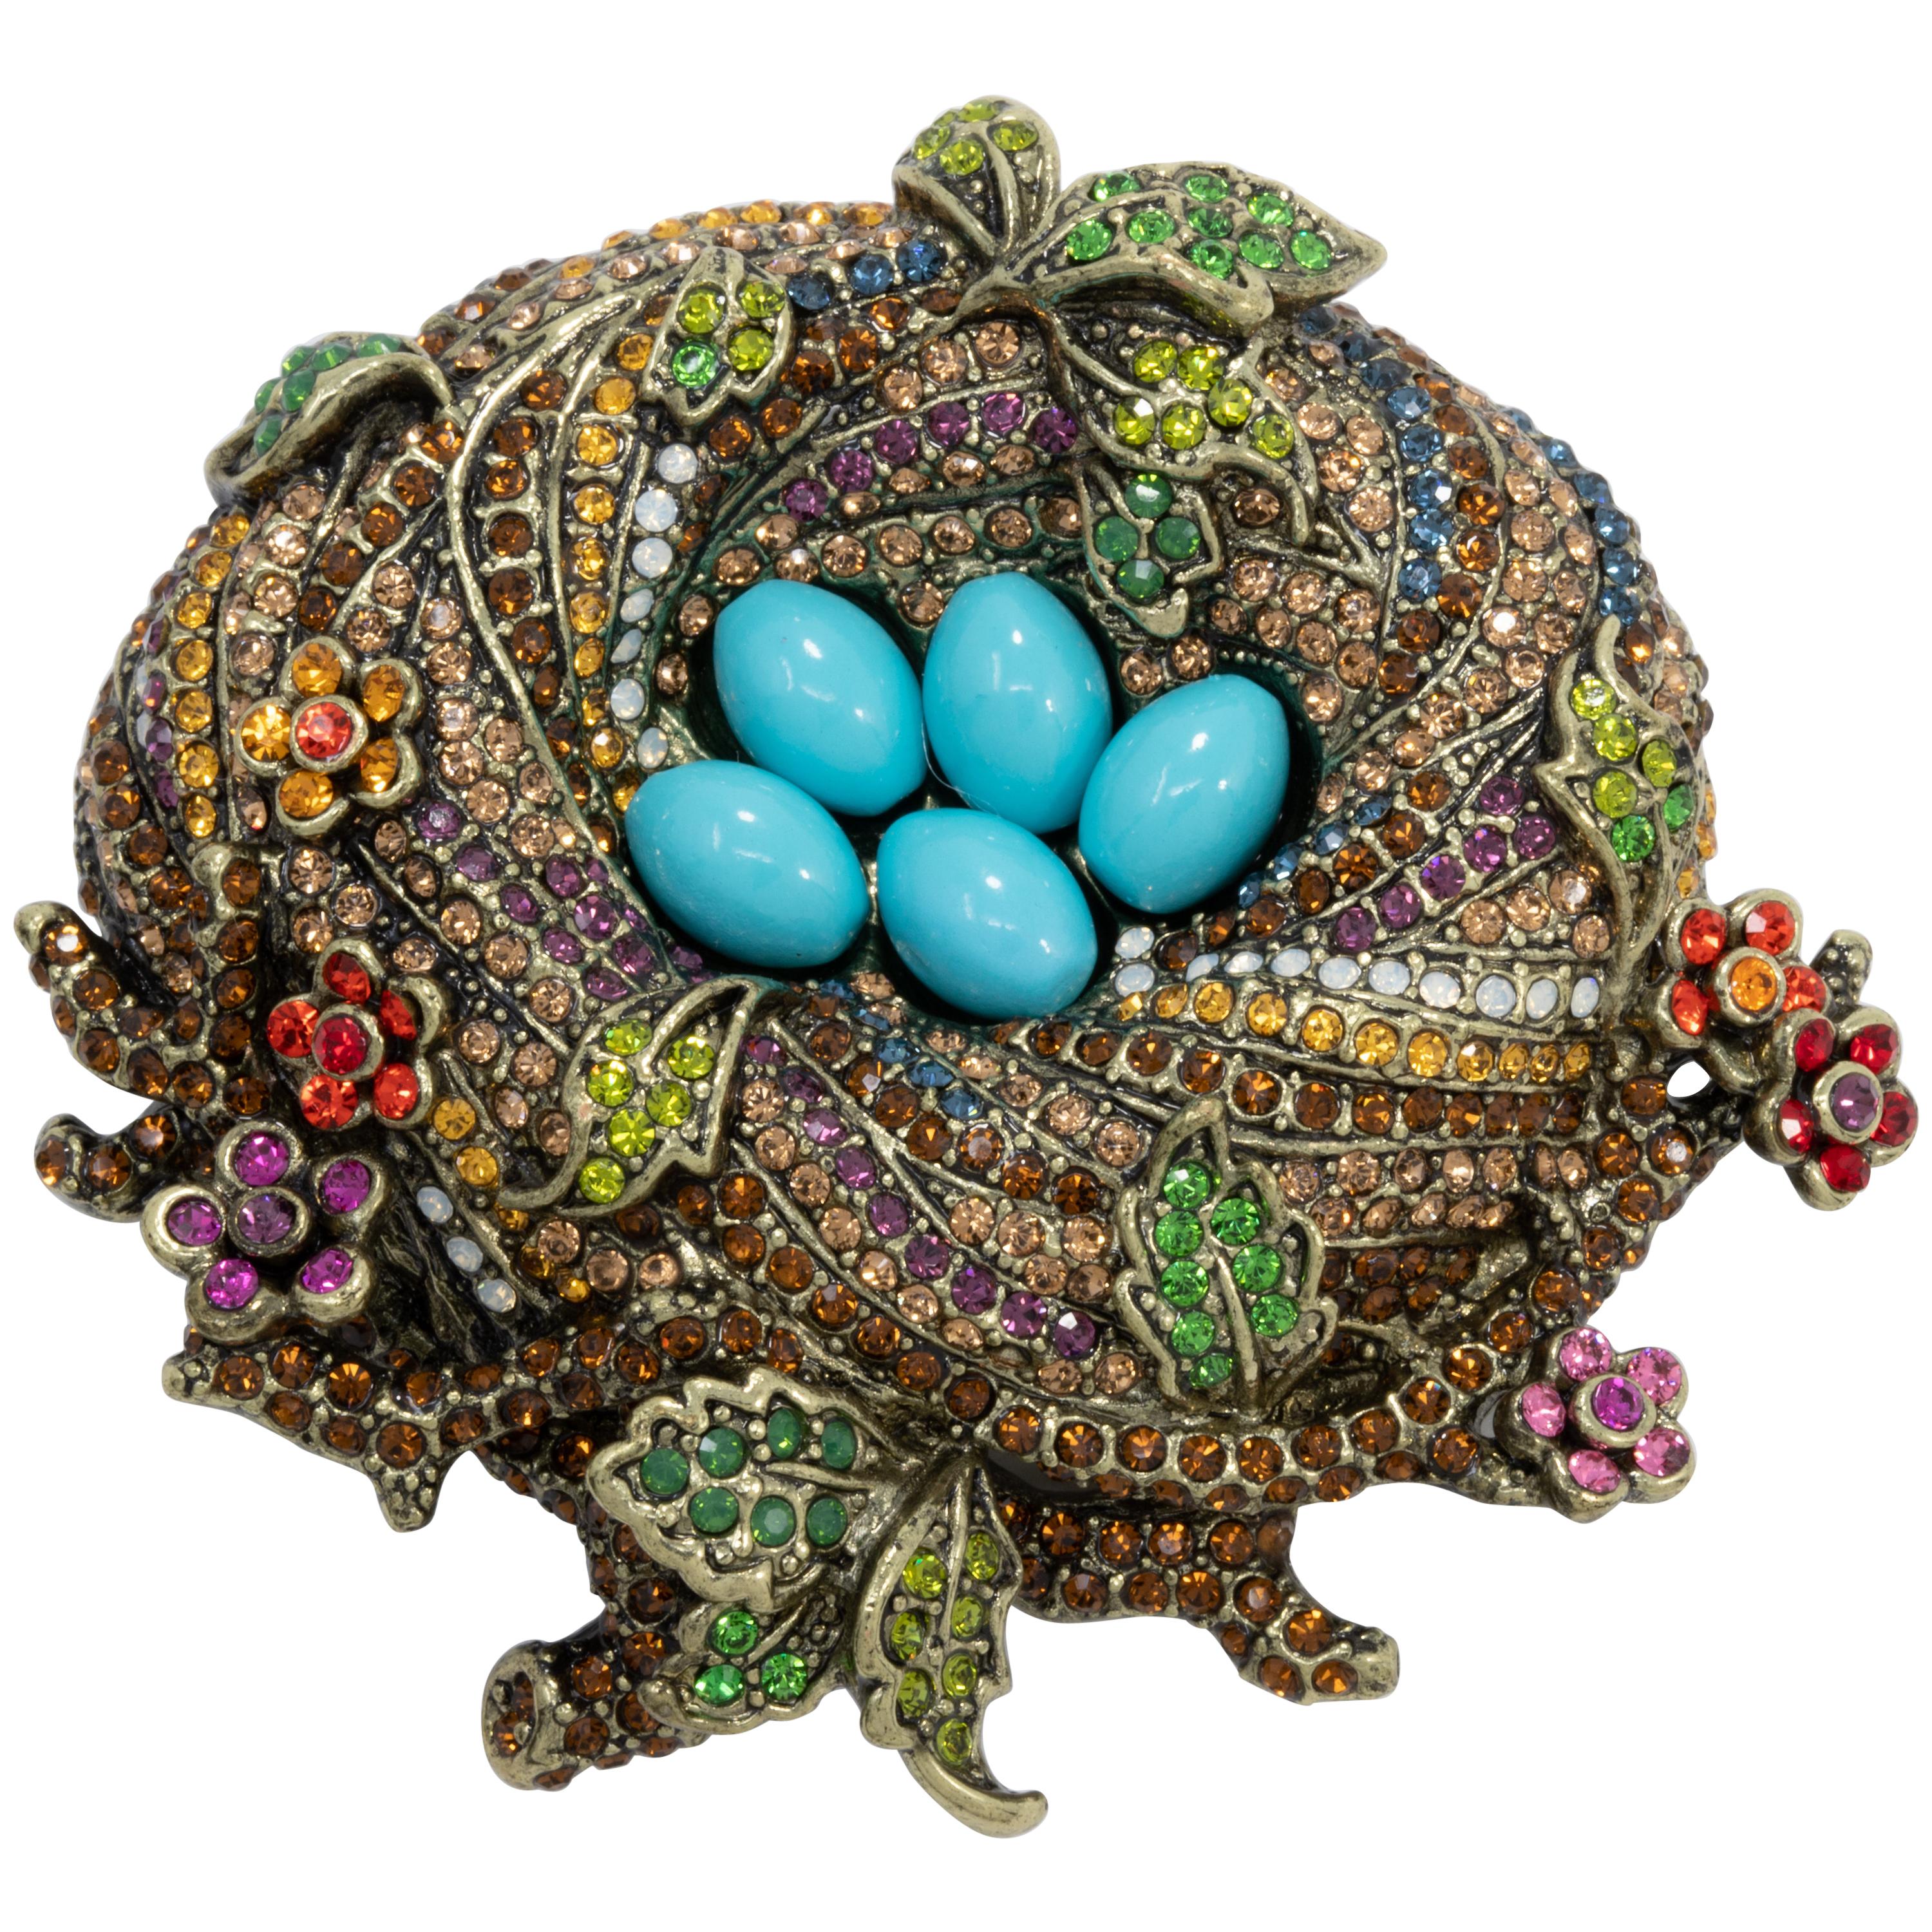 Épingle en cristal « On a Lark » de Heidi Daus représentant un nid d'oiseau, ton laiton, cabochons turquoise en vente